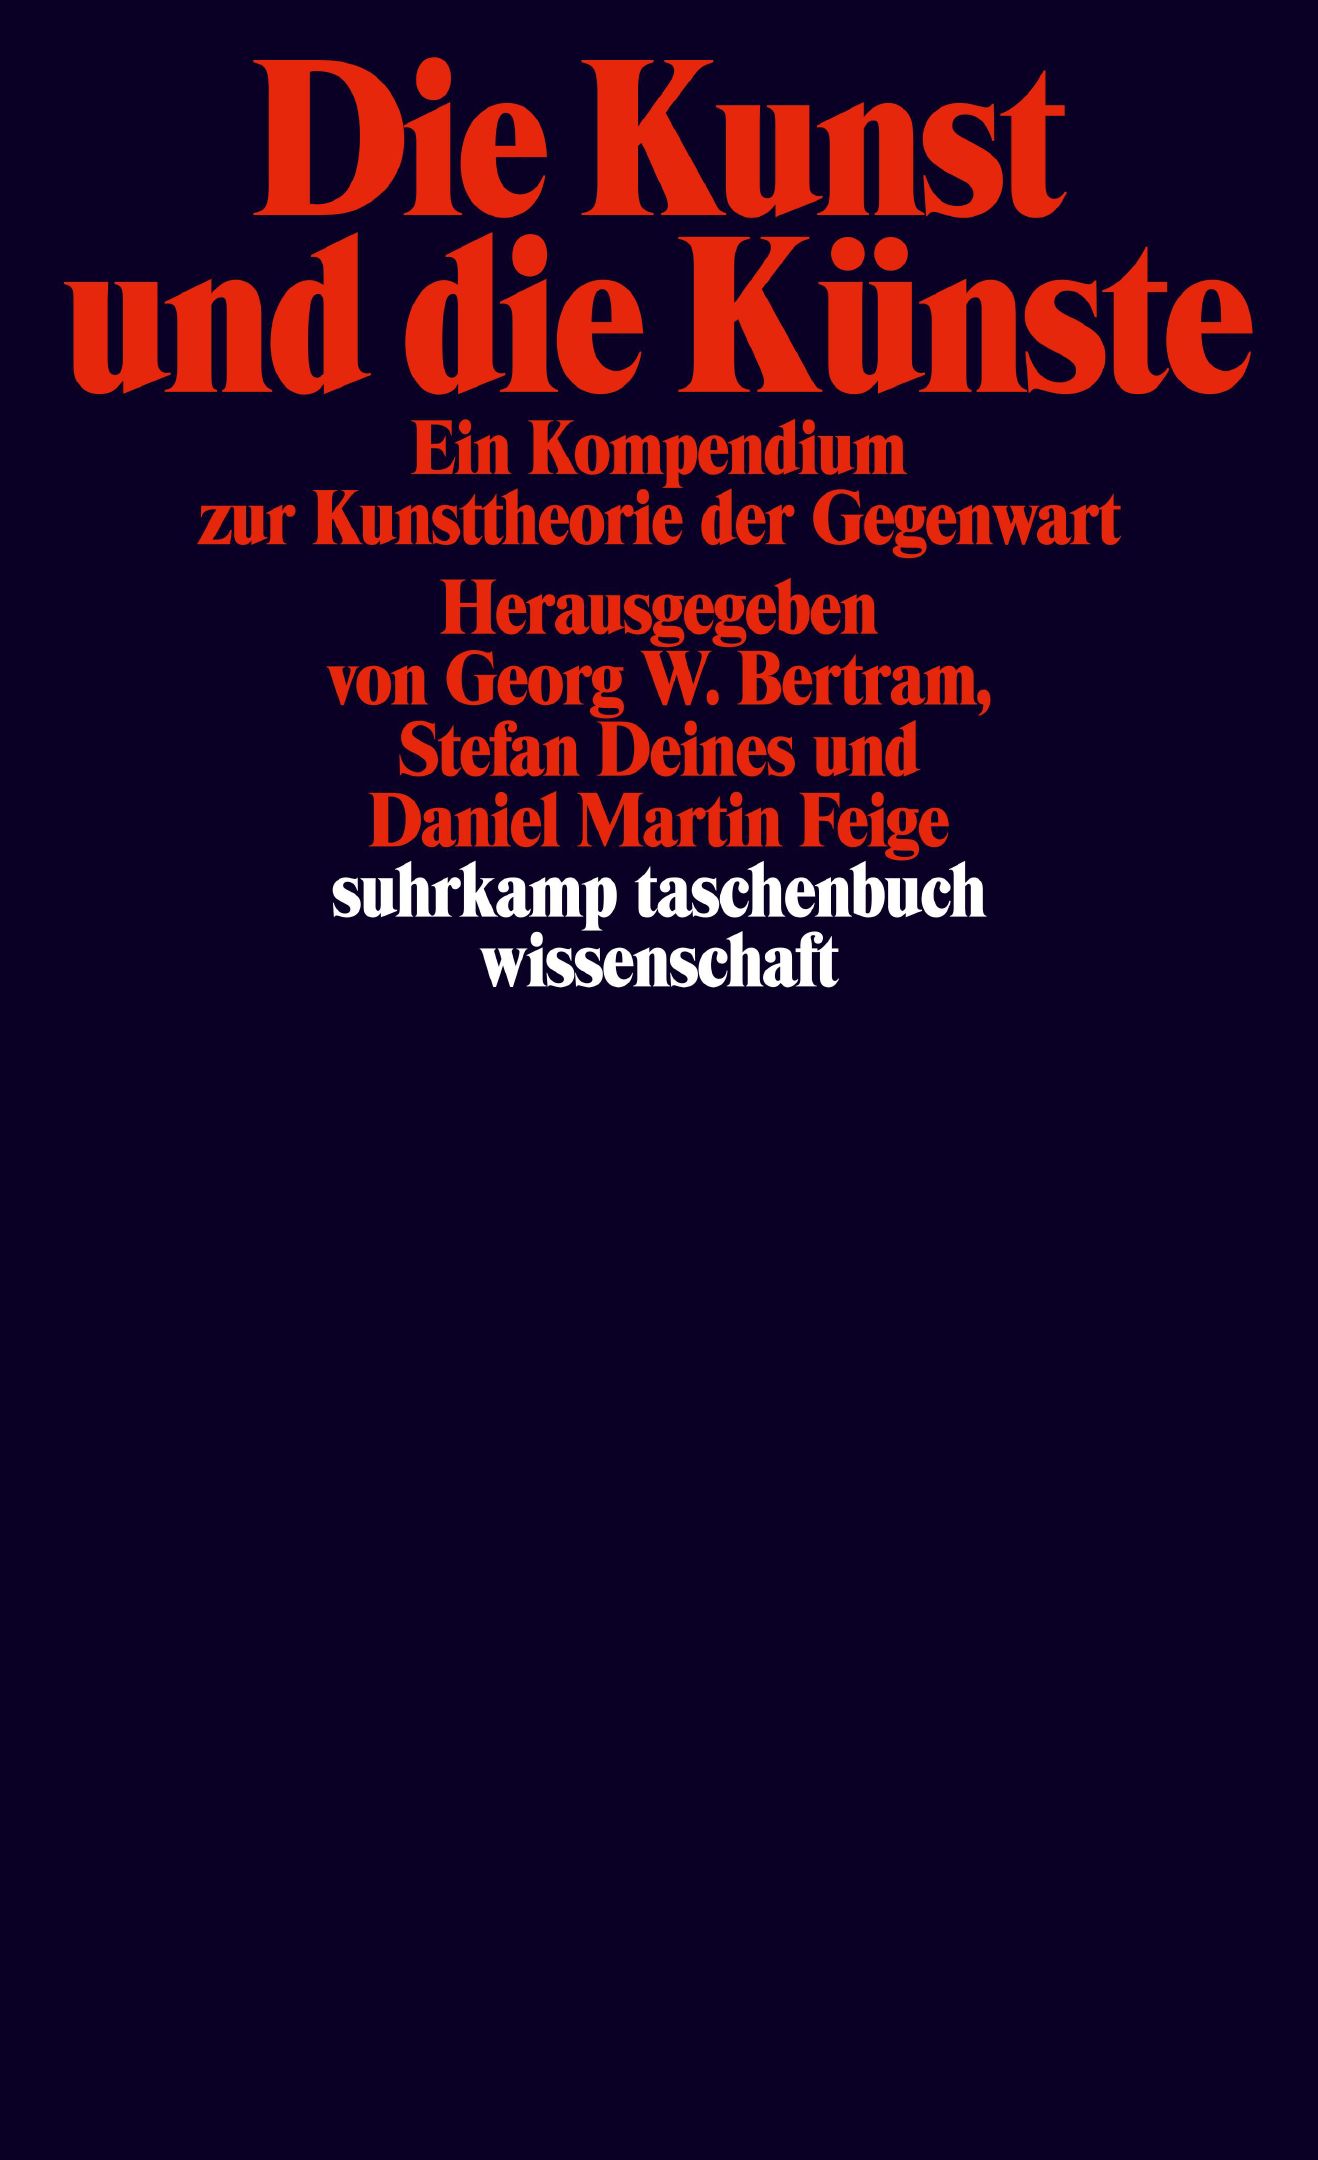 Abb.: Cover „Die Kunst und die Künste. Ein Kompendium zur Kunsttheorie der Gegenwart“, herausgegeben von Georg W. Bertram, Stefan Deines und Daniel Martin Feige